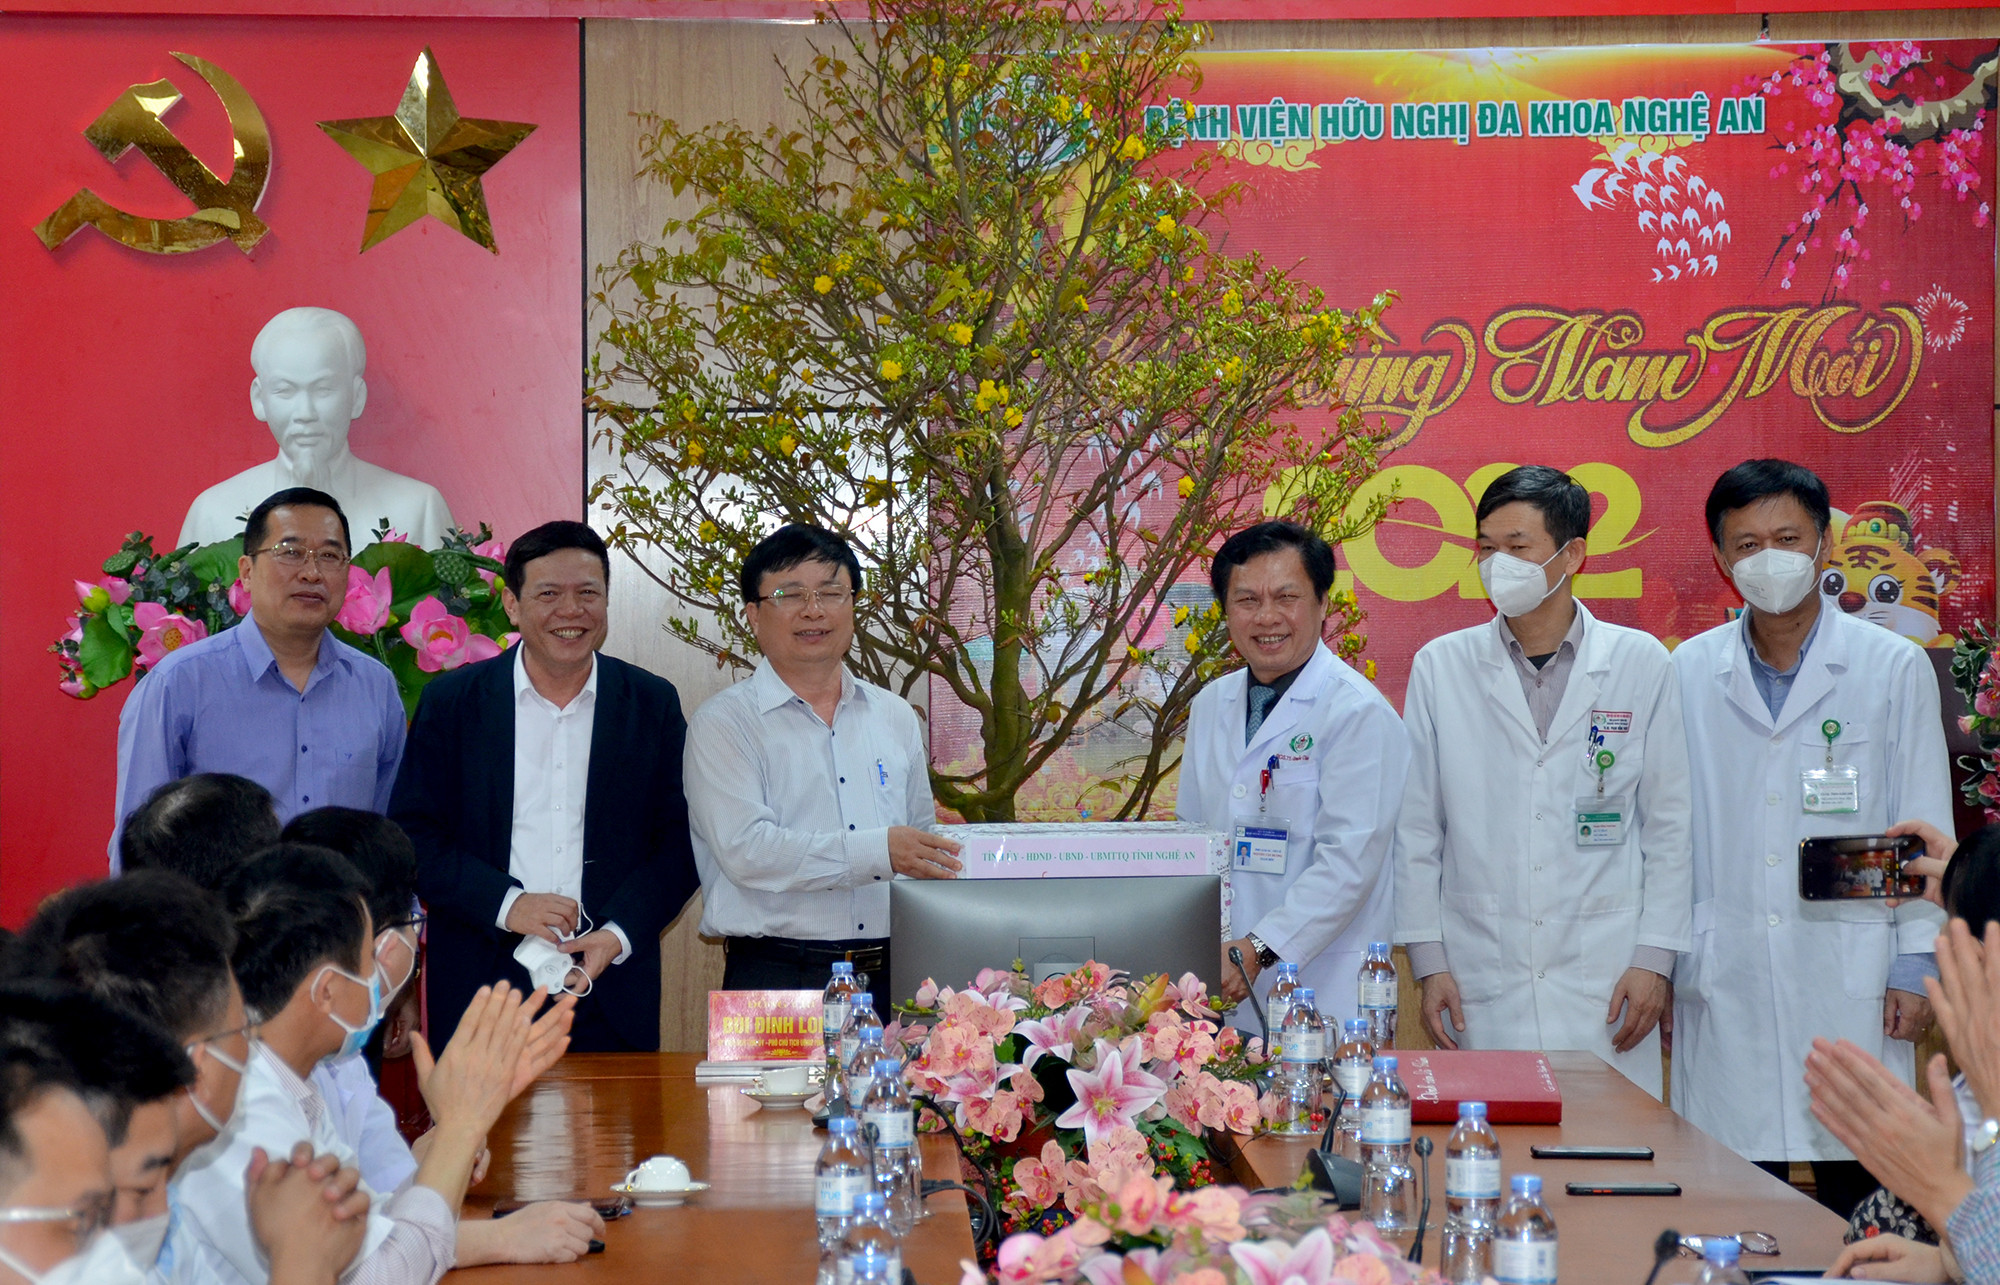 Đoàn công tác tặng quà chúc mừng năm mới Bệnh viện HNĐK Nghệ An. Ảnh: Thành Chung